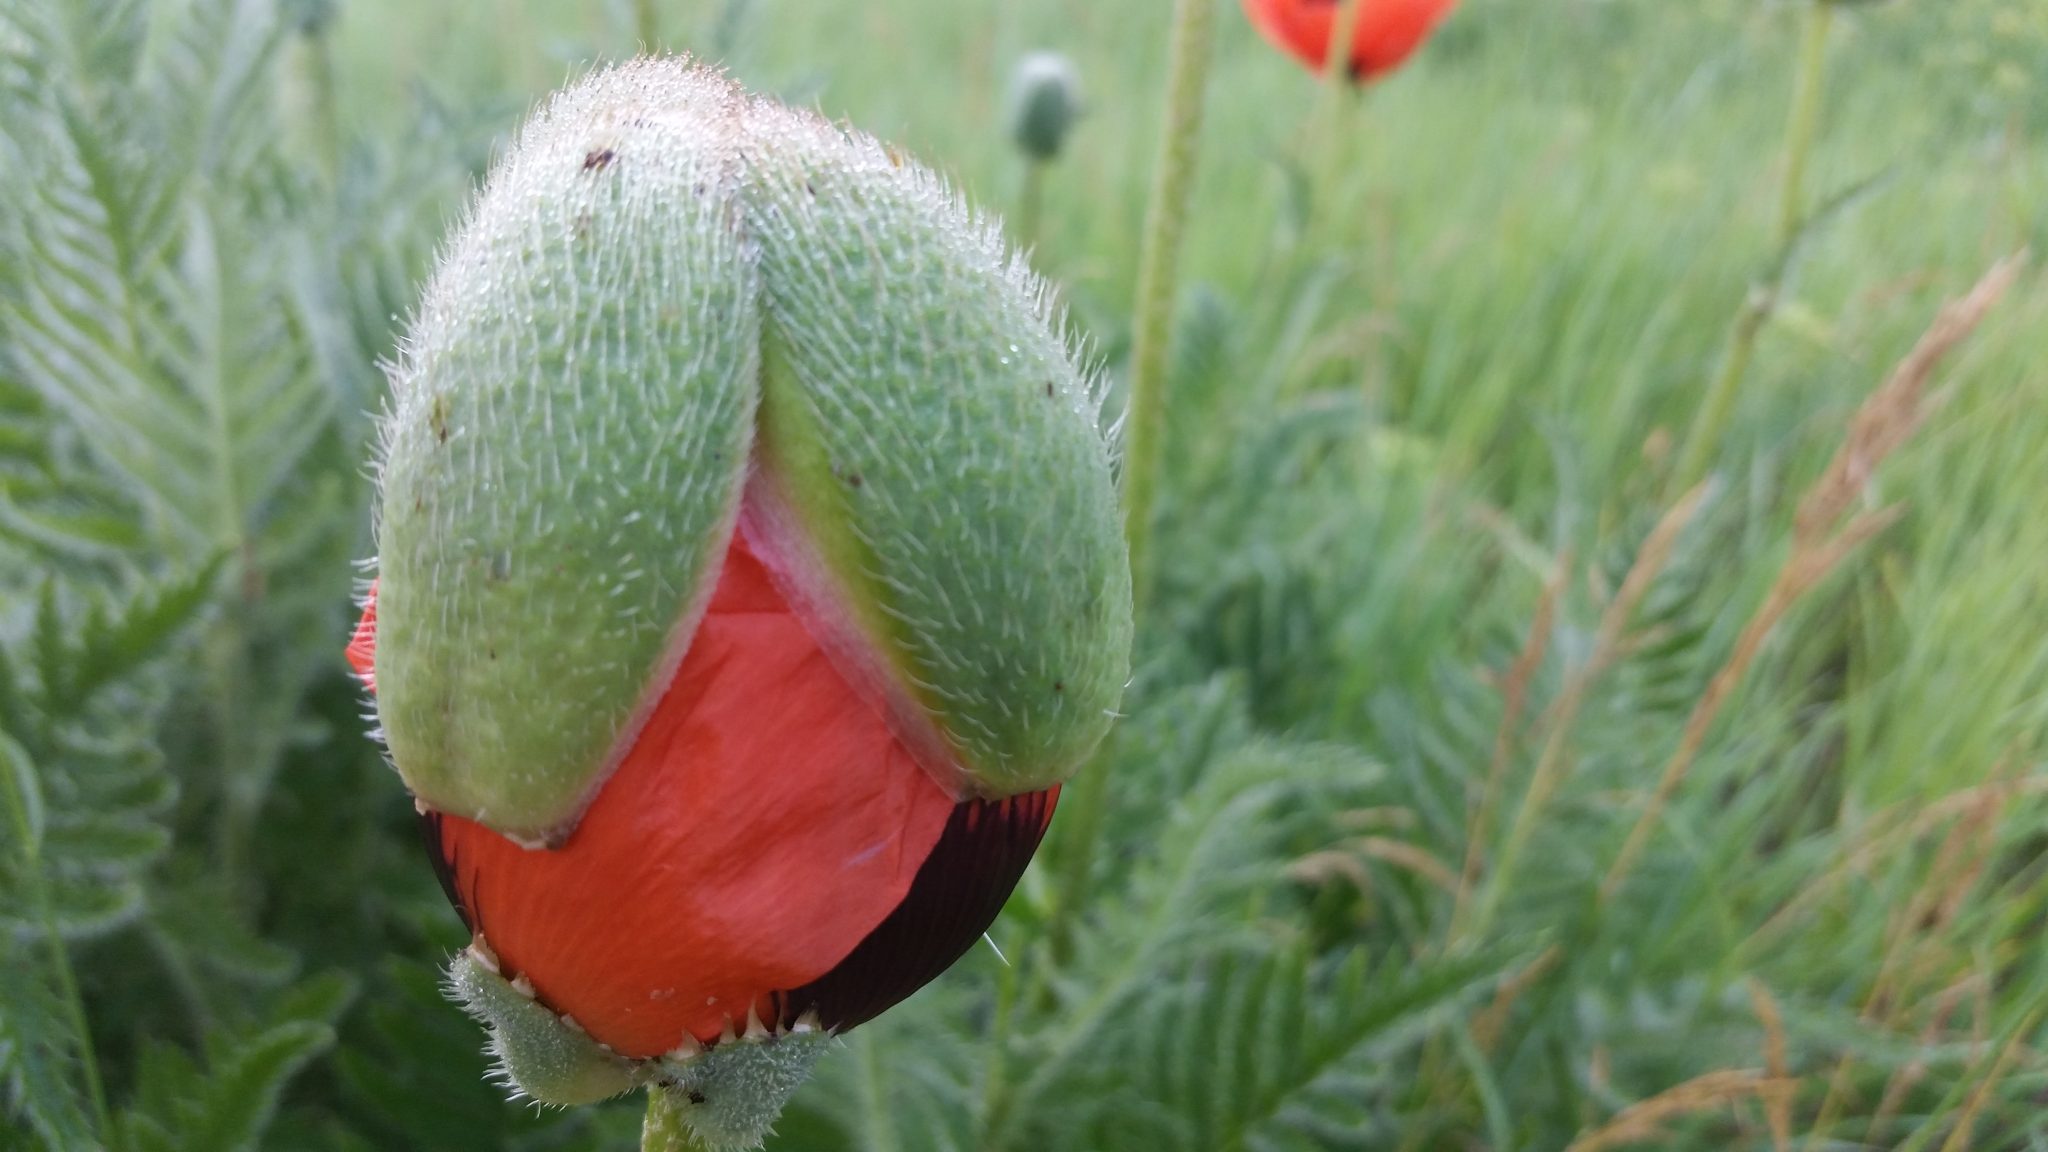 Poppy in mid-bloom